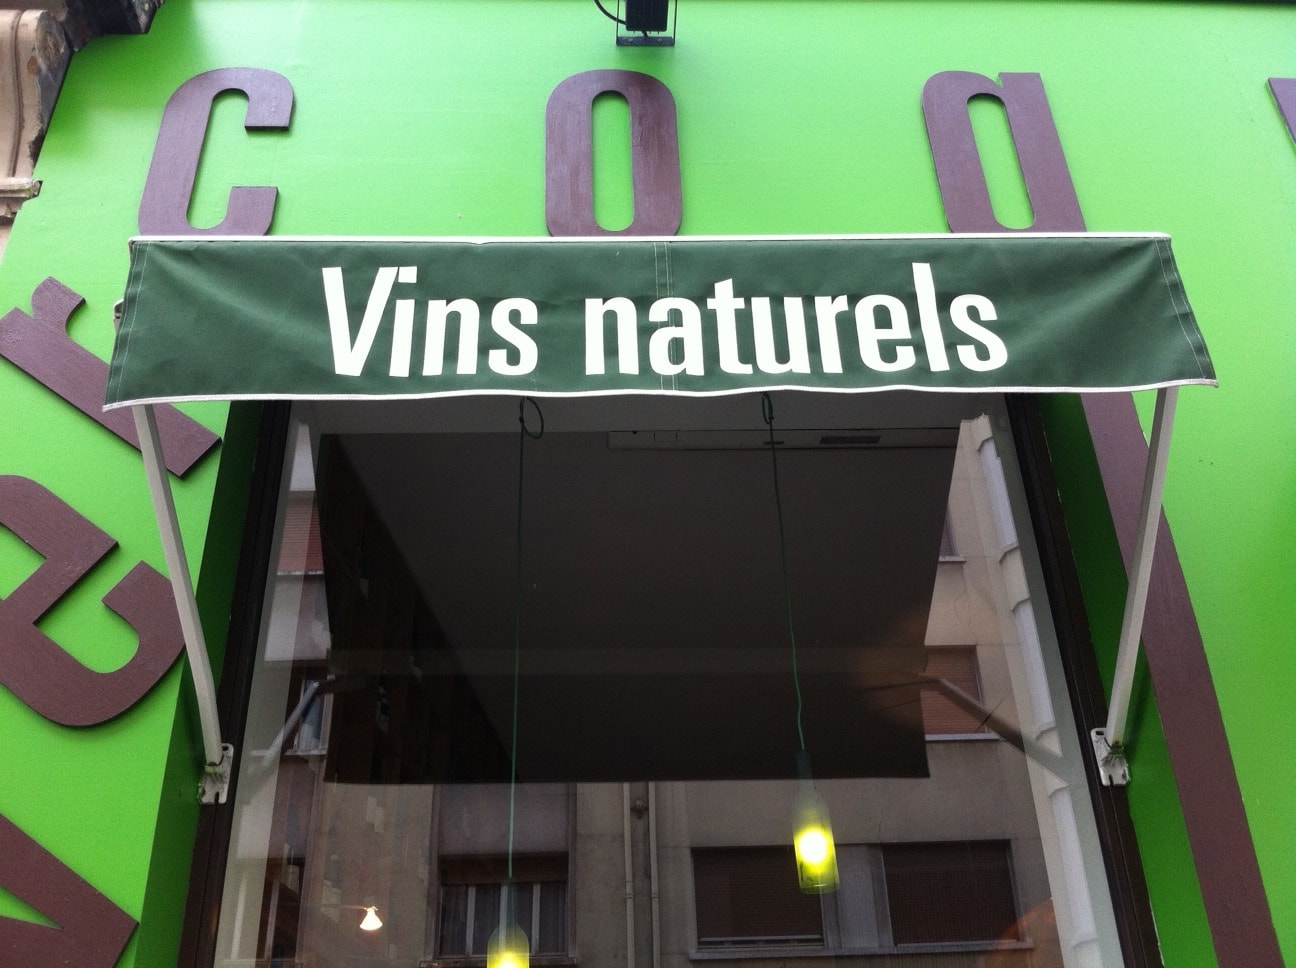 La devanture verte du Vercoquin (cave à vins naturels, Lyon 7e).